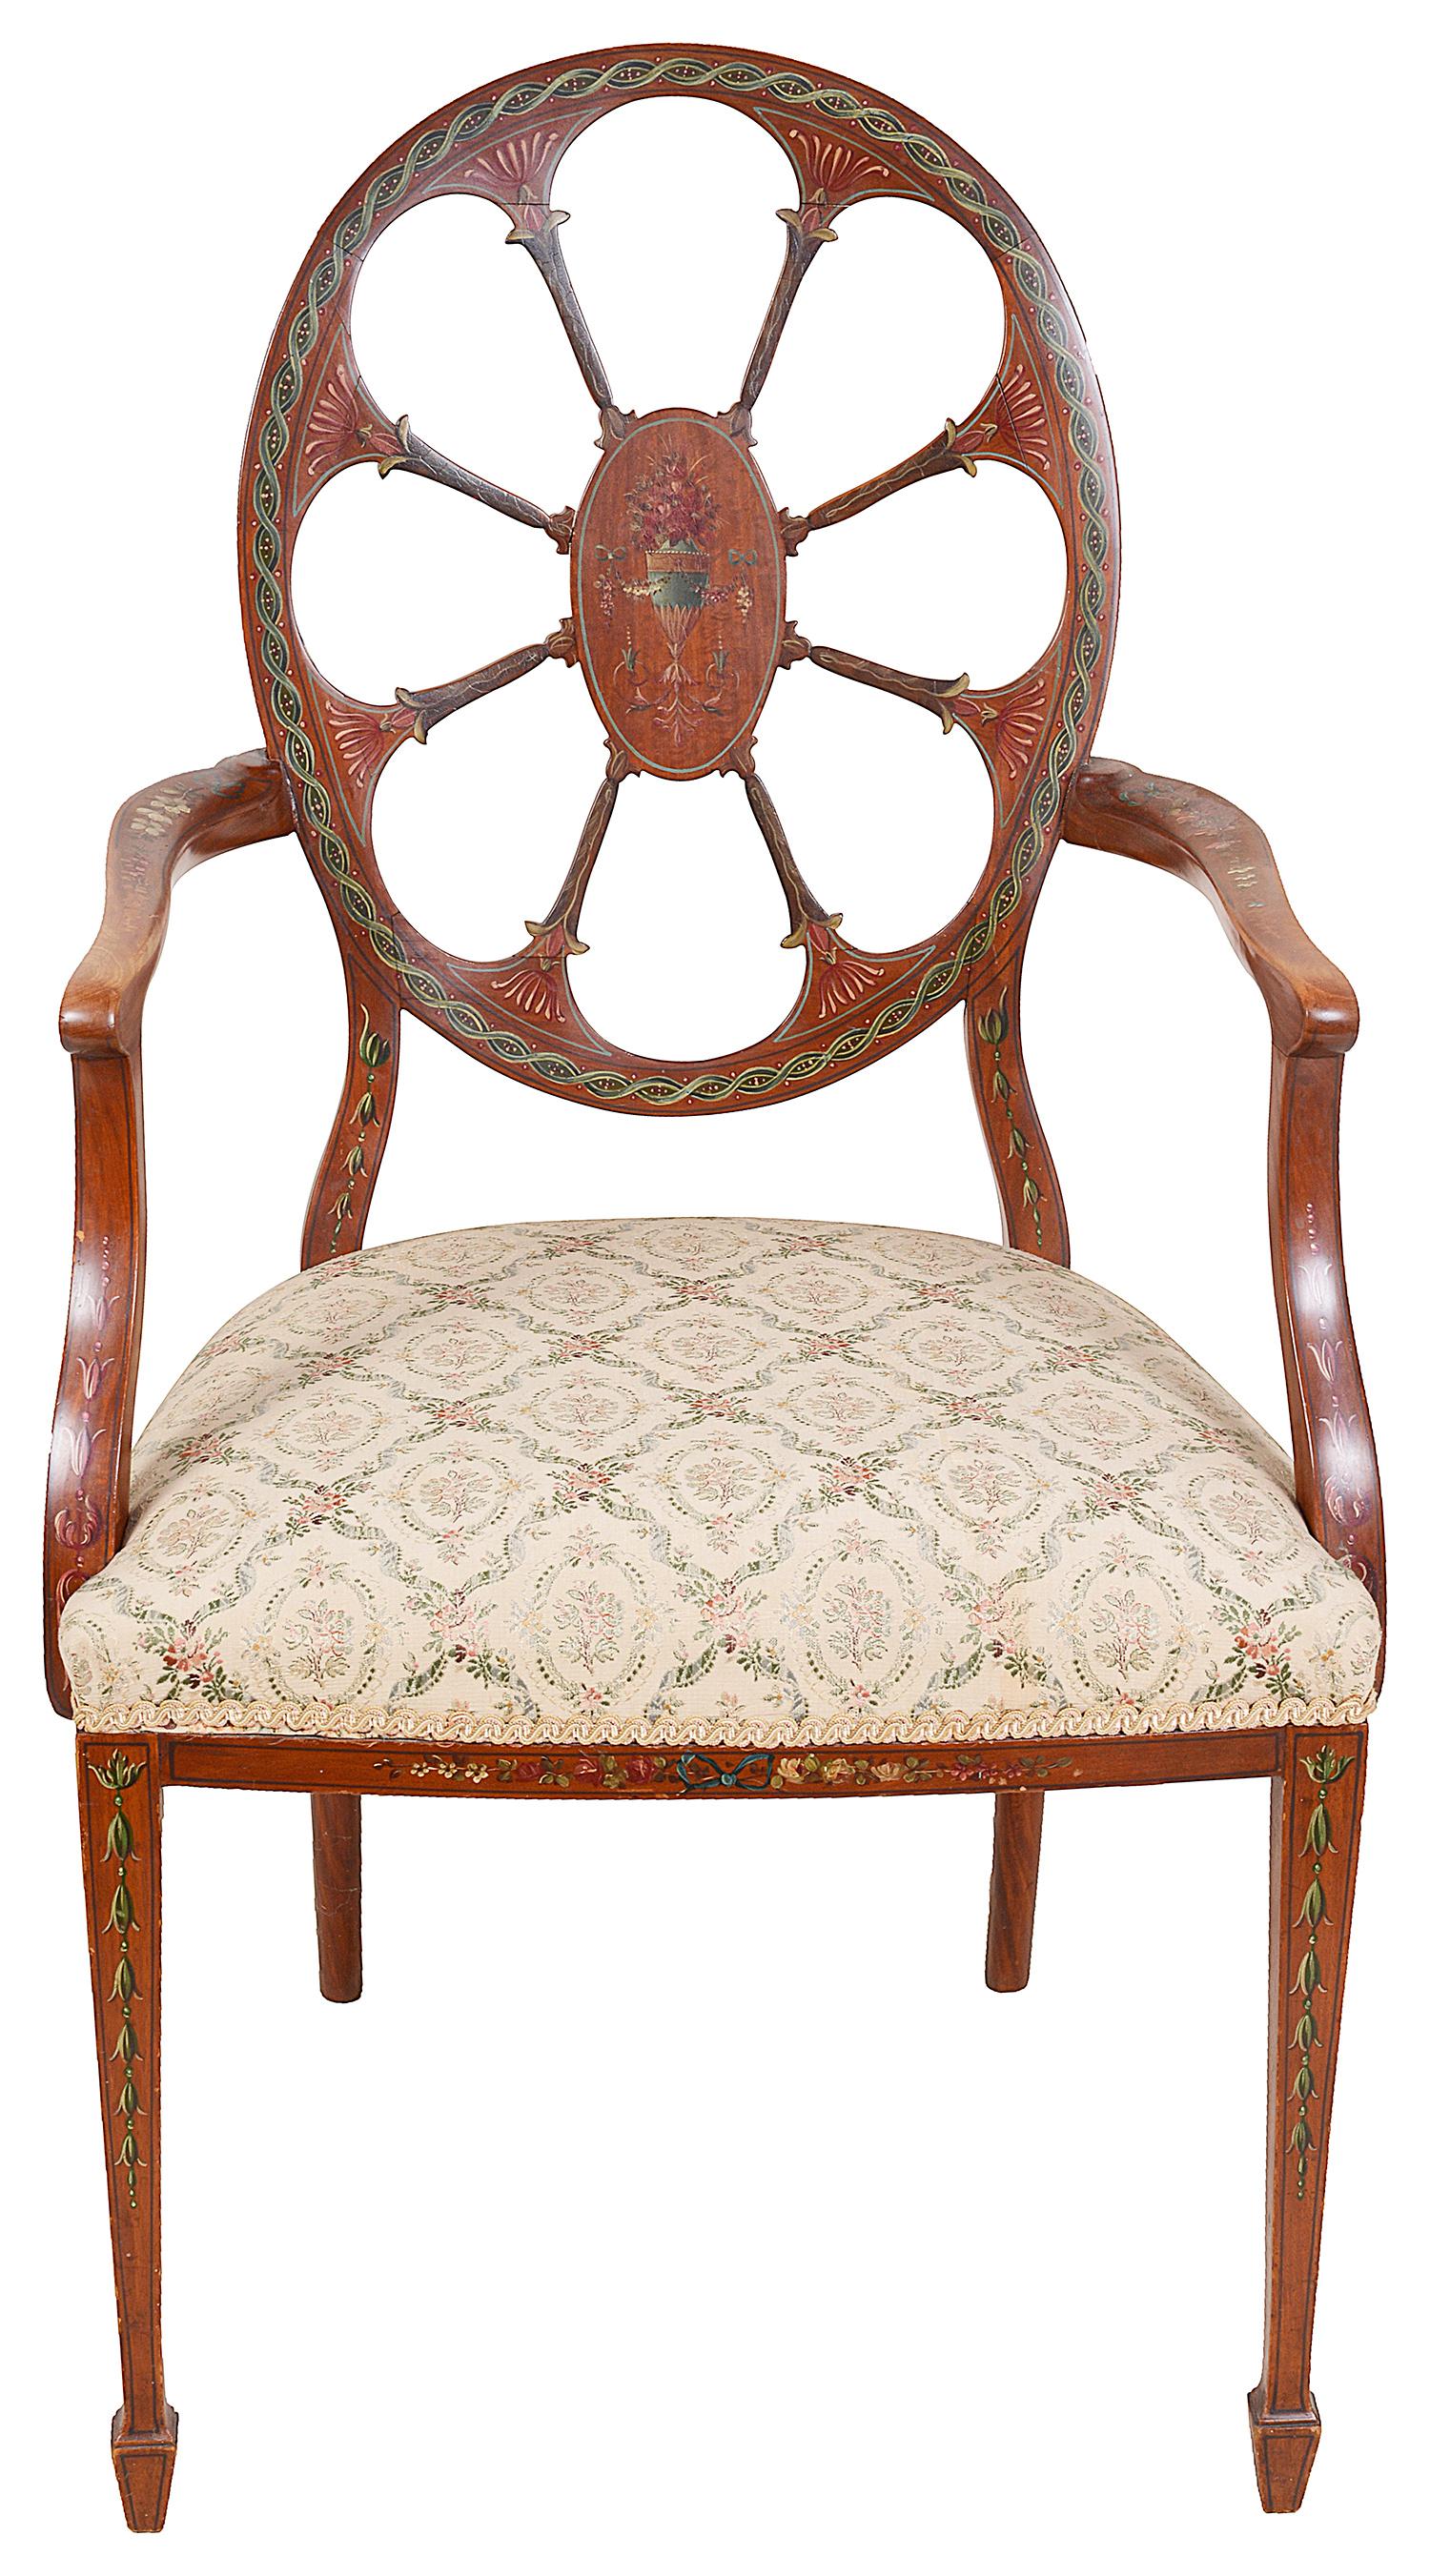 Un très bon fauteuil en bois de satin de la fin du 19ème siècle, de style Sheraton, avec un merveilleux motif classique peint à la main, des décorations de fleurs et d'urnes, le dossier avec un panneau central ovale et des supports sculptés en forme